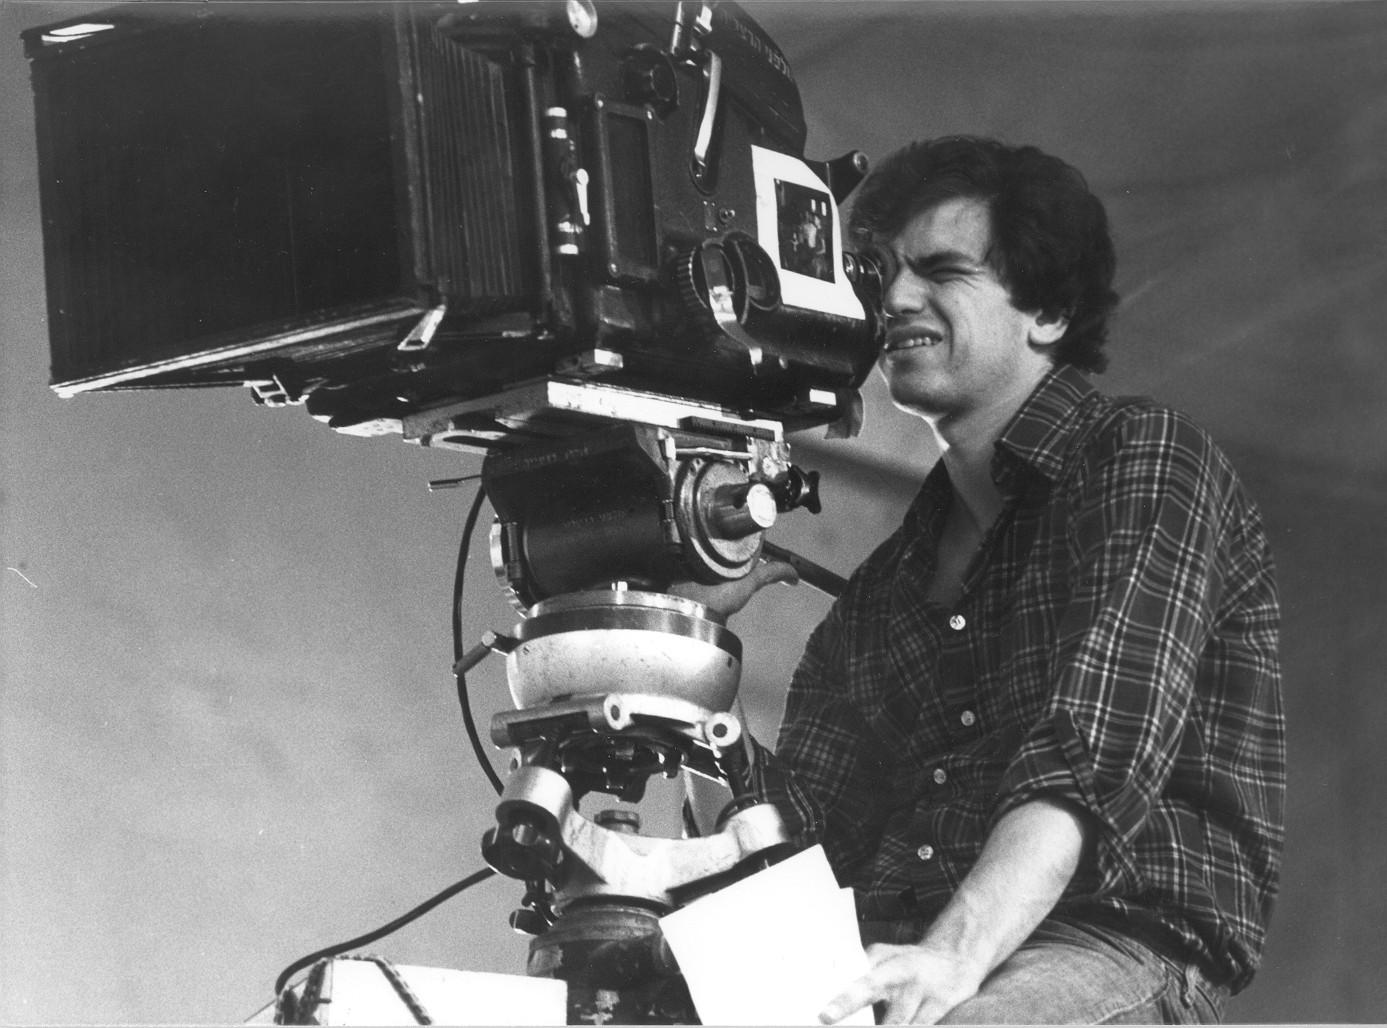 הבמאי אבי נשר במהלך צילומי הסרט דיזנגוף 99 (צילום: צחי אוסטרובסקי)